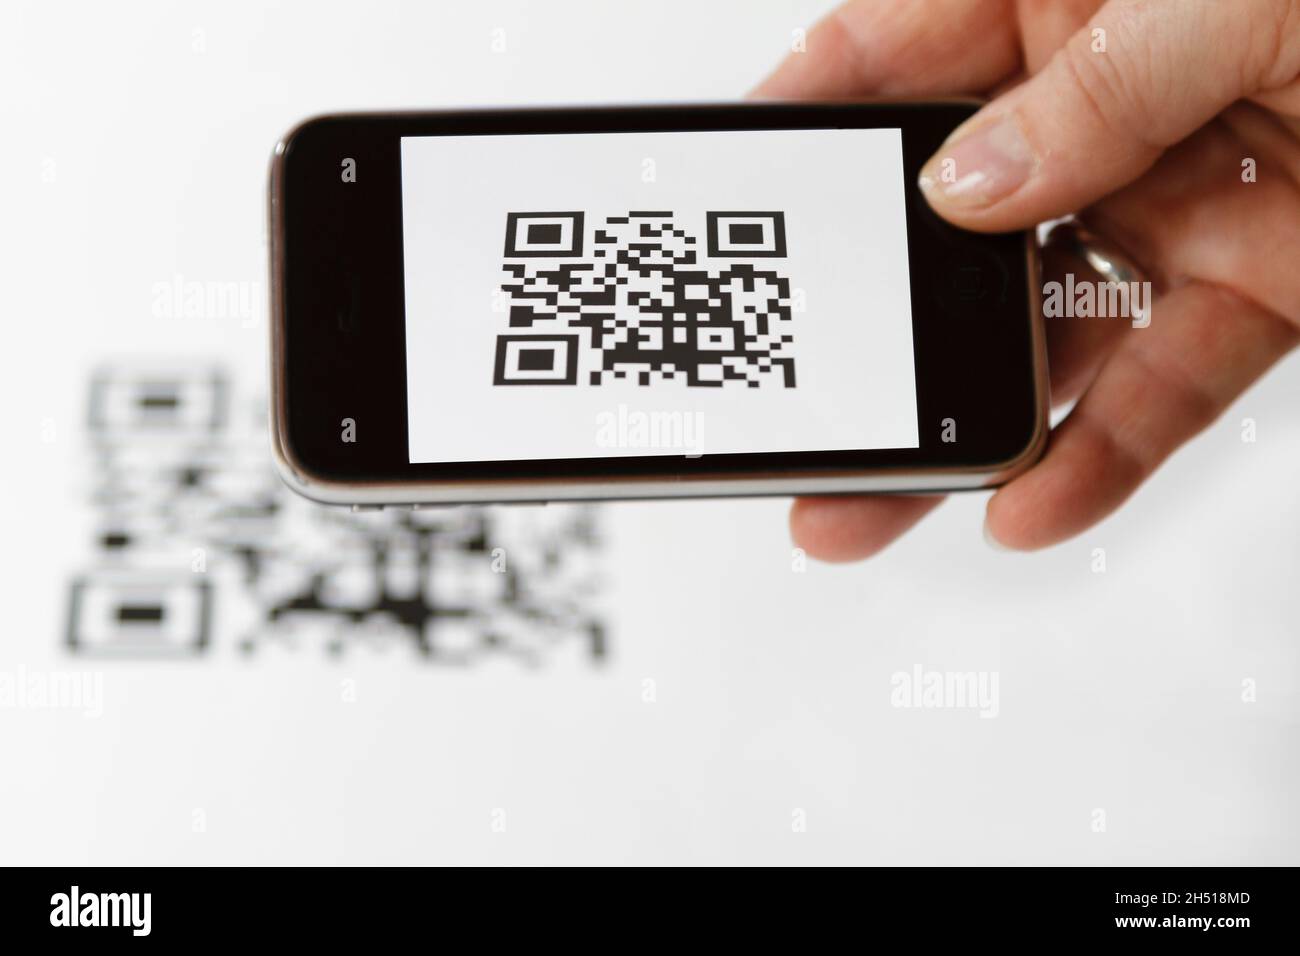 Ein Mobiltelefon in der Hand, während ein QR-Code gescannt wird Stockfoto